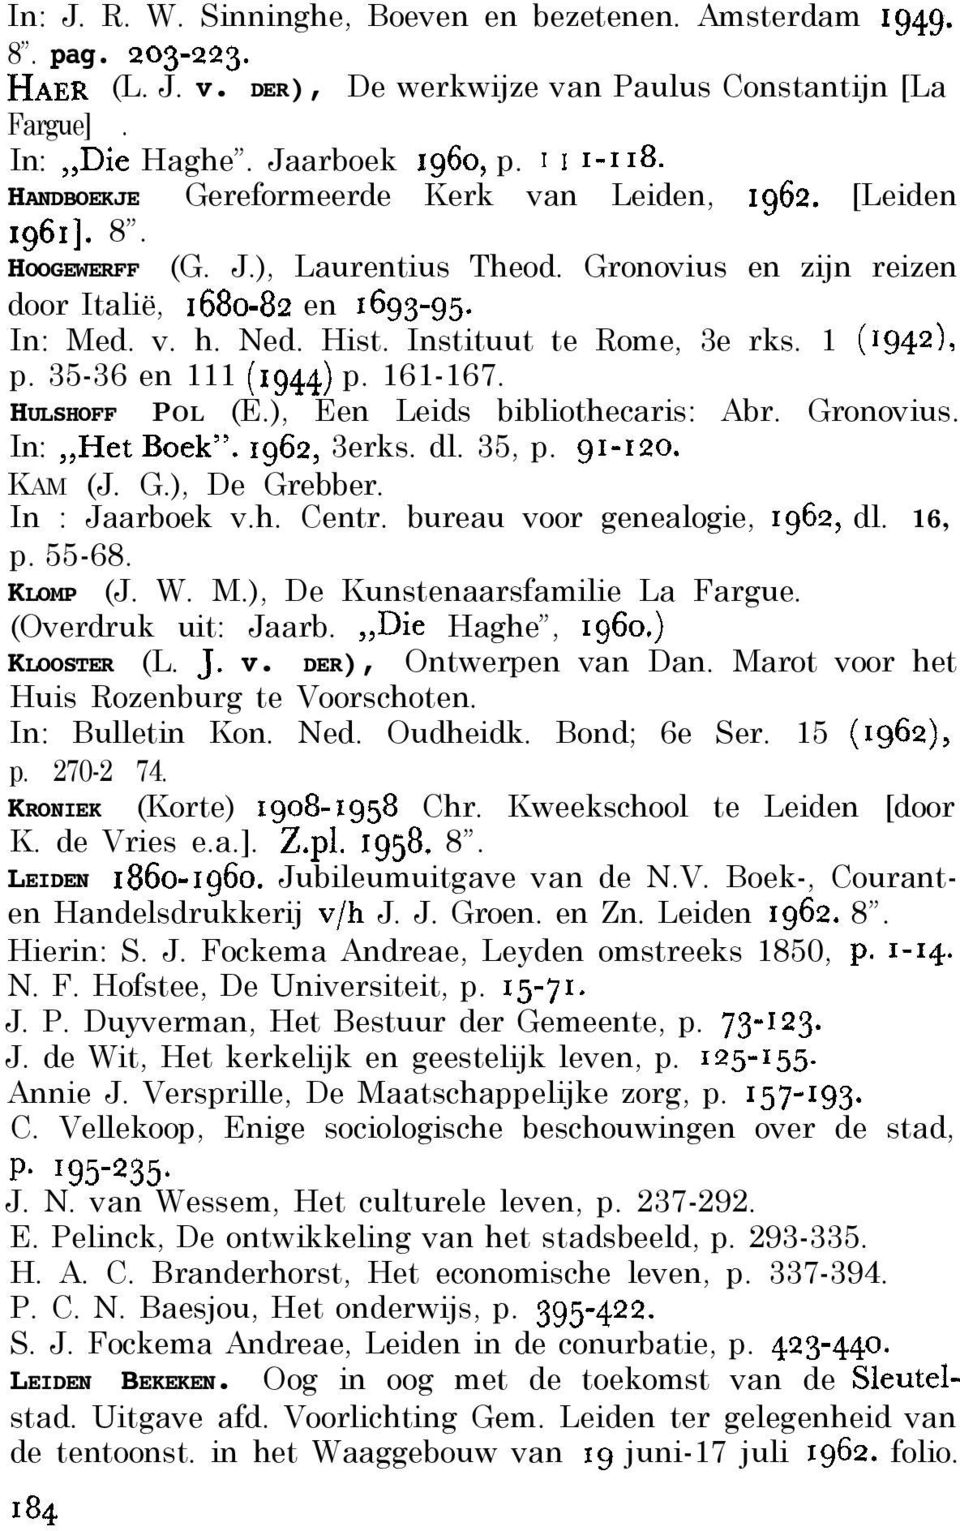 Instituut te Rome, 3e rks. 1 (r942), p. 35-36 en 111 (1944) p. 161-167. HULSHOFF POL (E.), Een Leids bibliothecaris: Abr. Gronovius. In:,,HetBoek. 1962, 3erks. dl. 35, p. 91-120. KAM (J. G.), De Grebber.